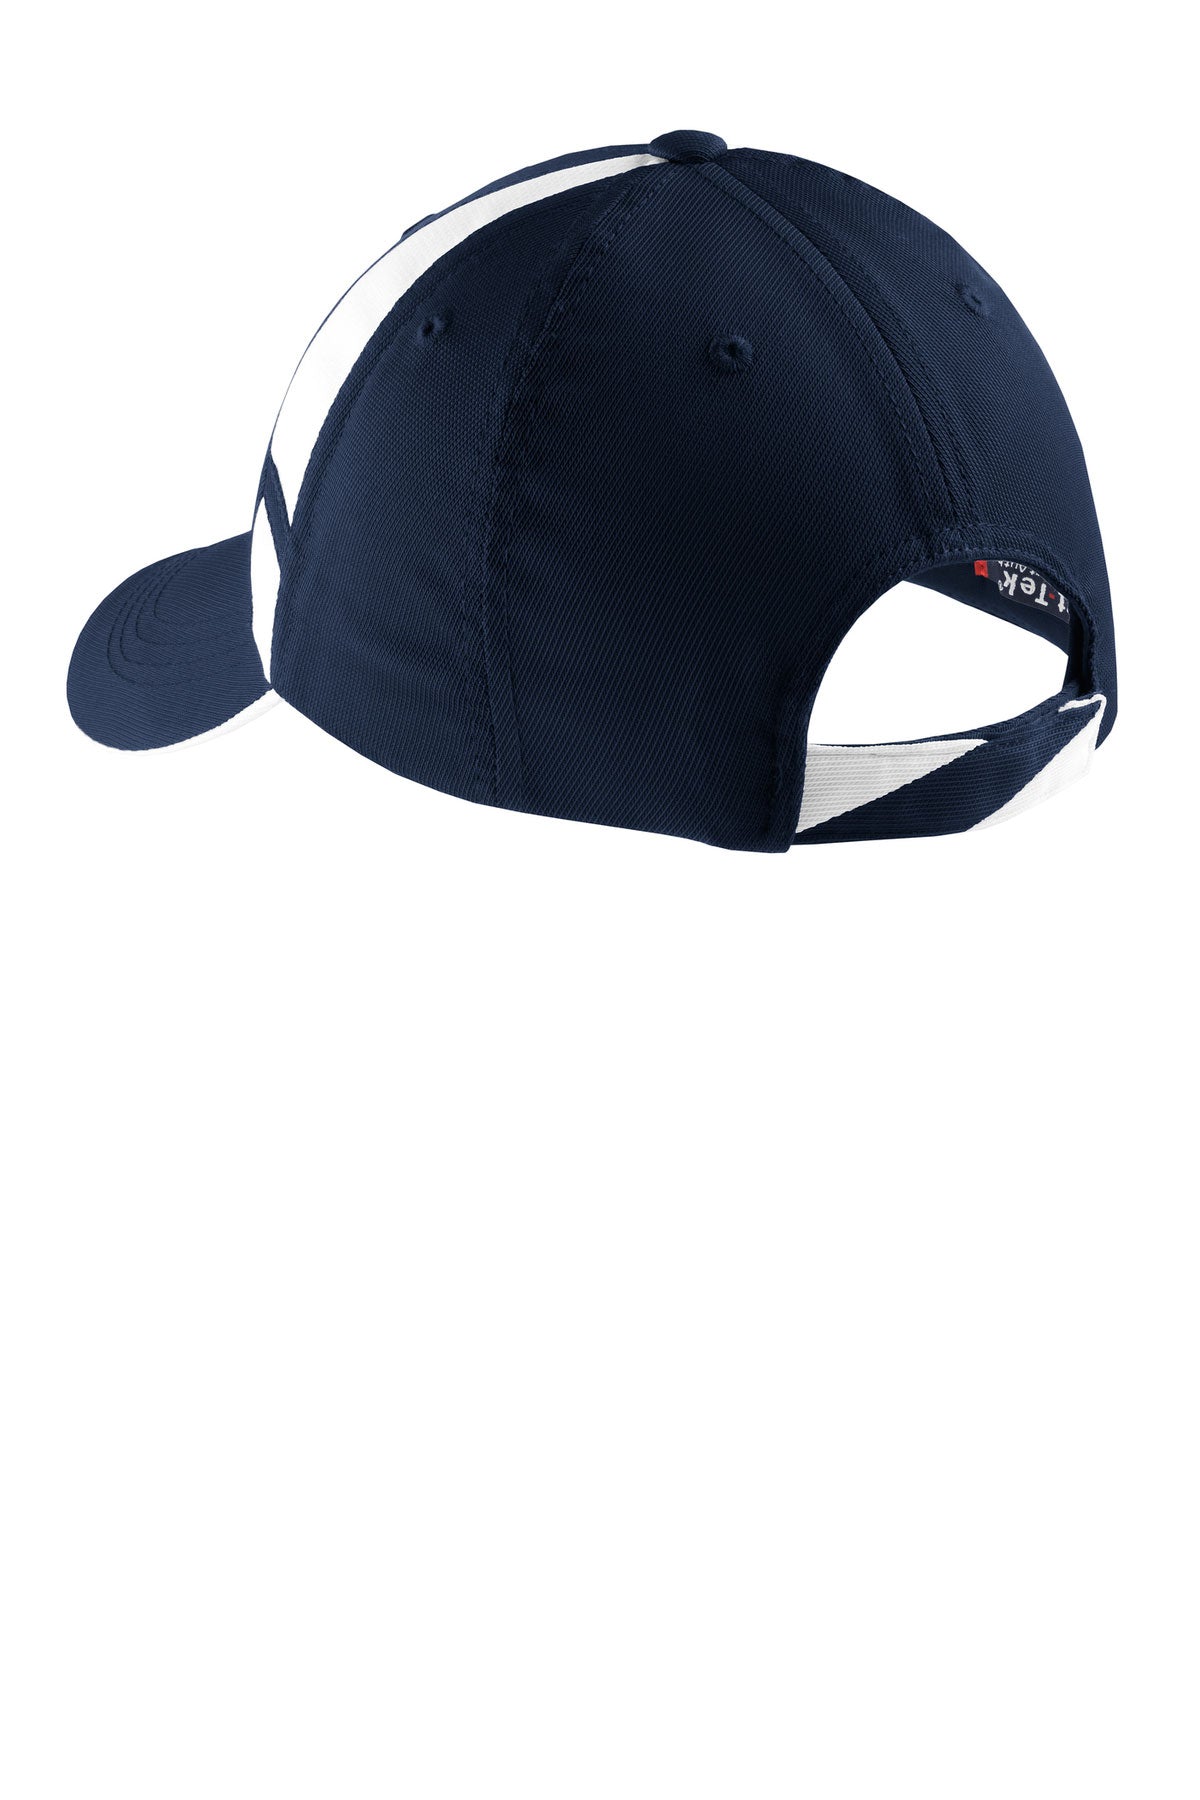 Sport-Tek Dry Zone Custom Mesh Inset Caps, True Navy/White